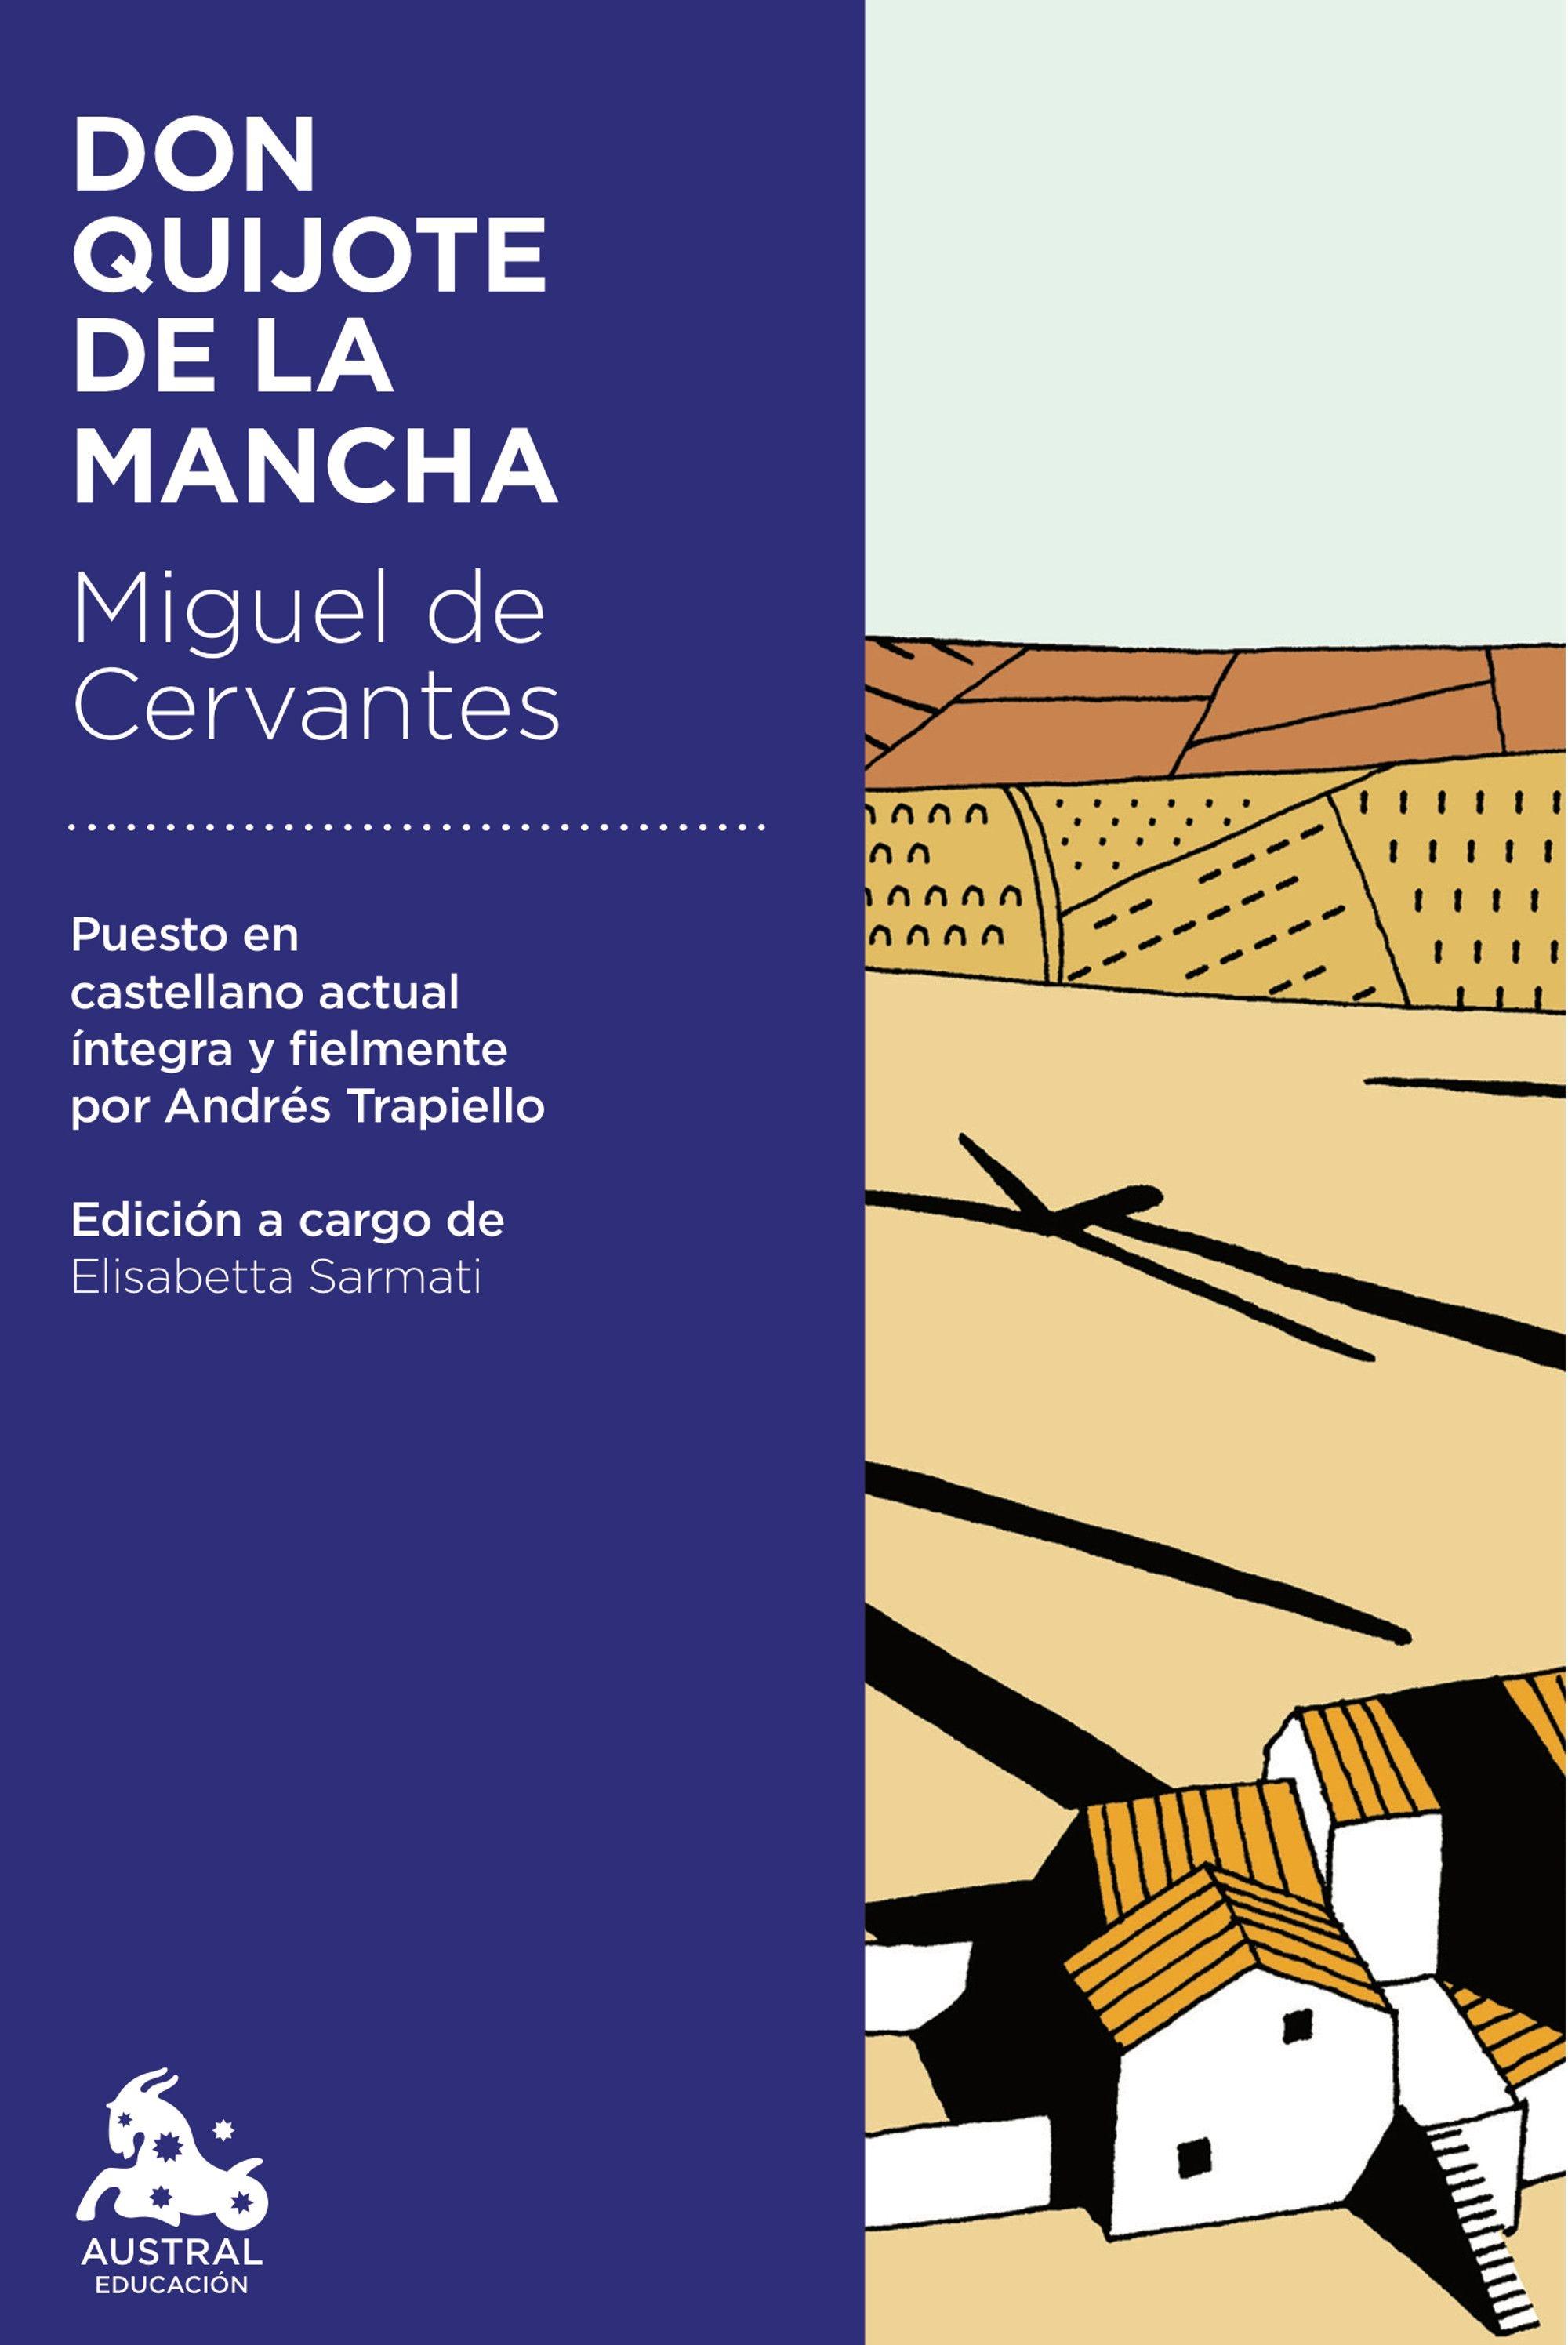 Don Quijote de la Mancha "Selección"